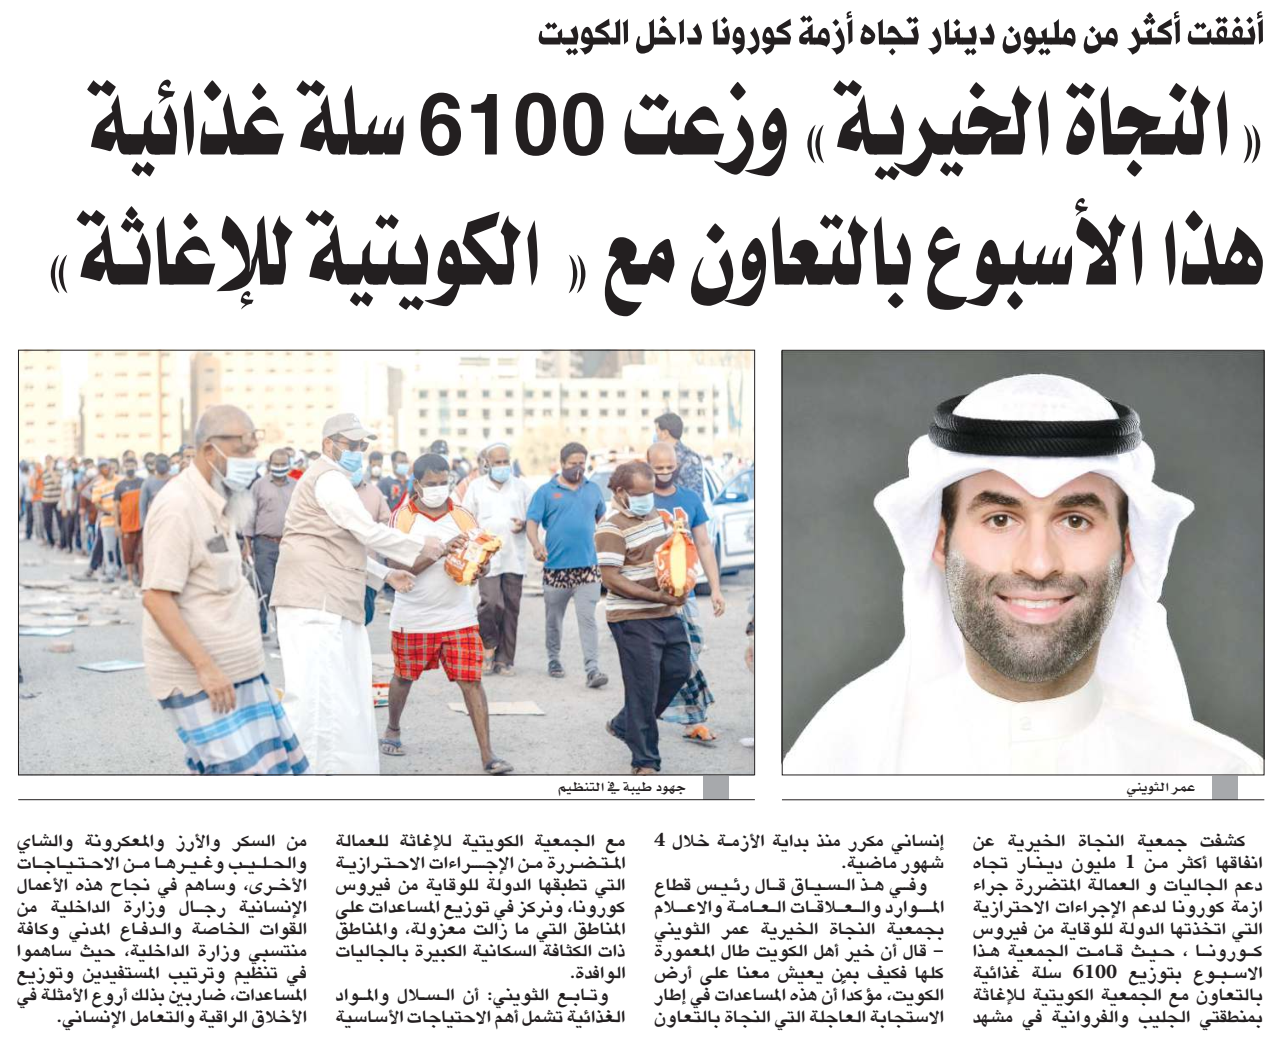 النجاة الخيرية وزعت 6100 سلة غذائية هذا الاسبوع بالتعاون مع " الكويتية للإغاثة "